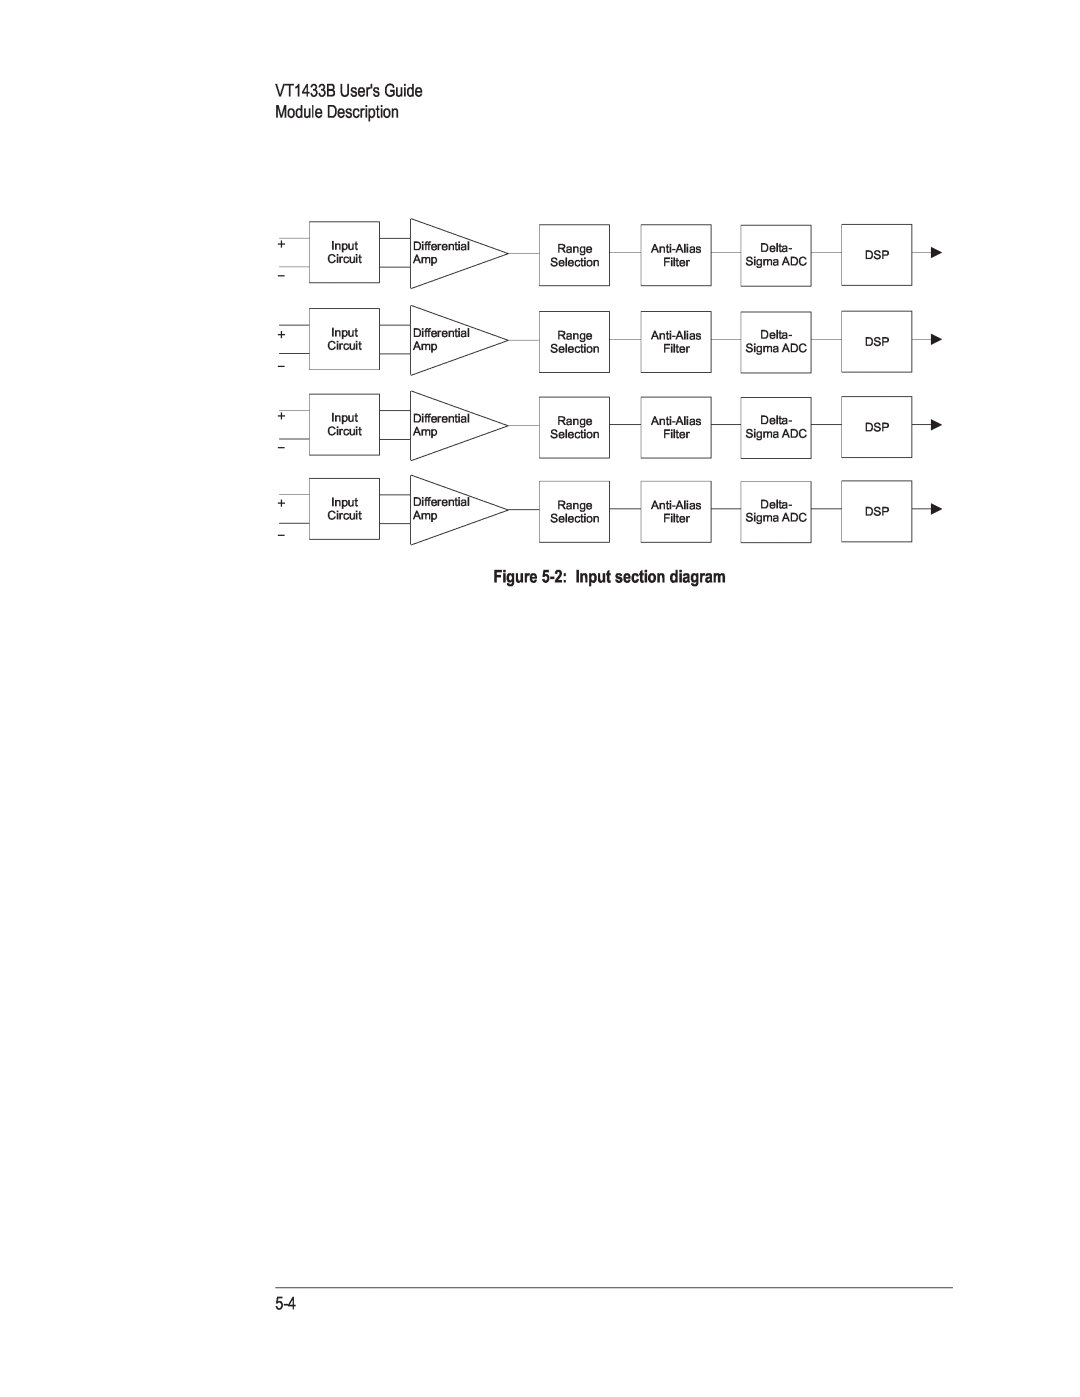 VXI manual VT1433B Users Guide Module Description, 2:Input section diagram 